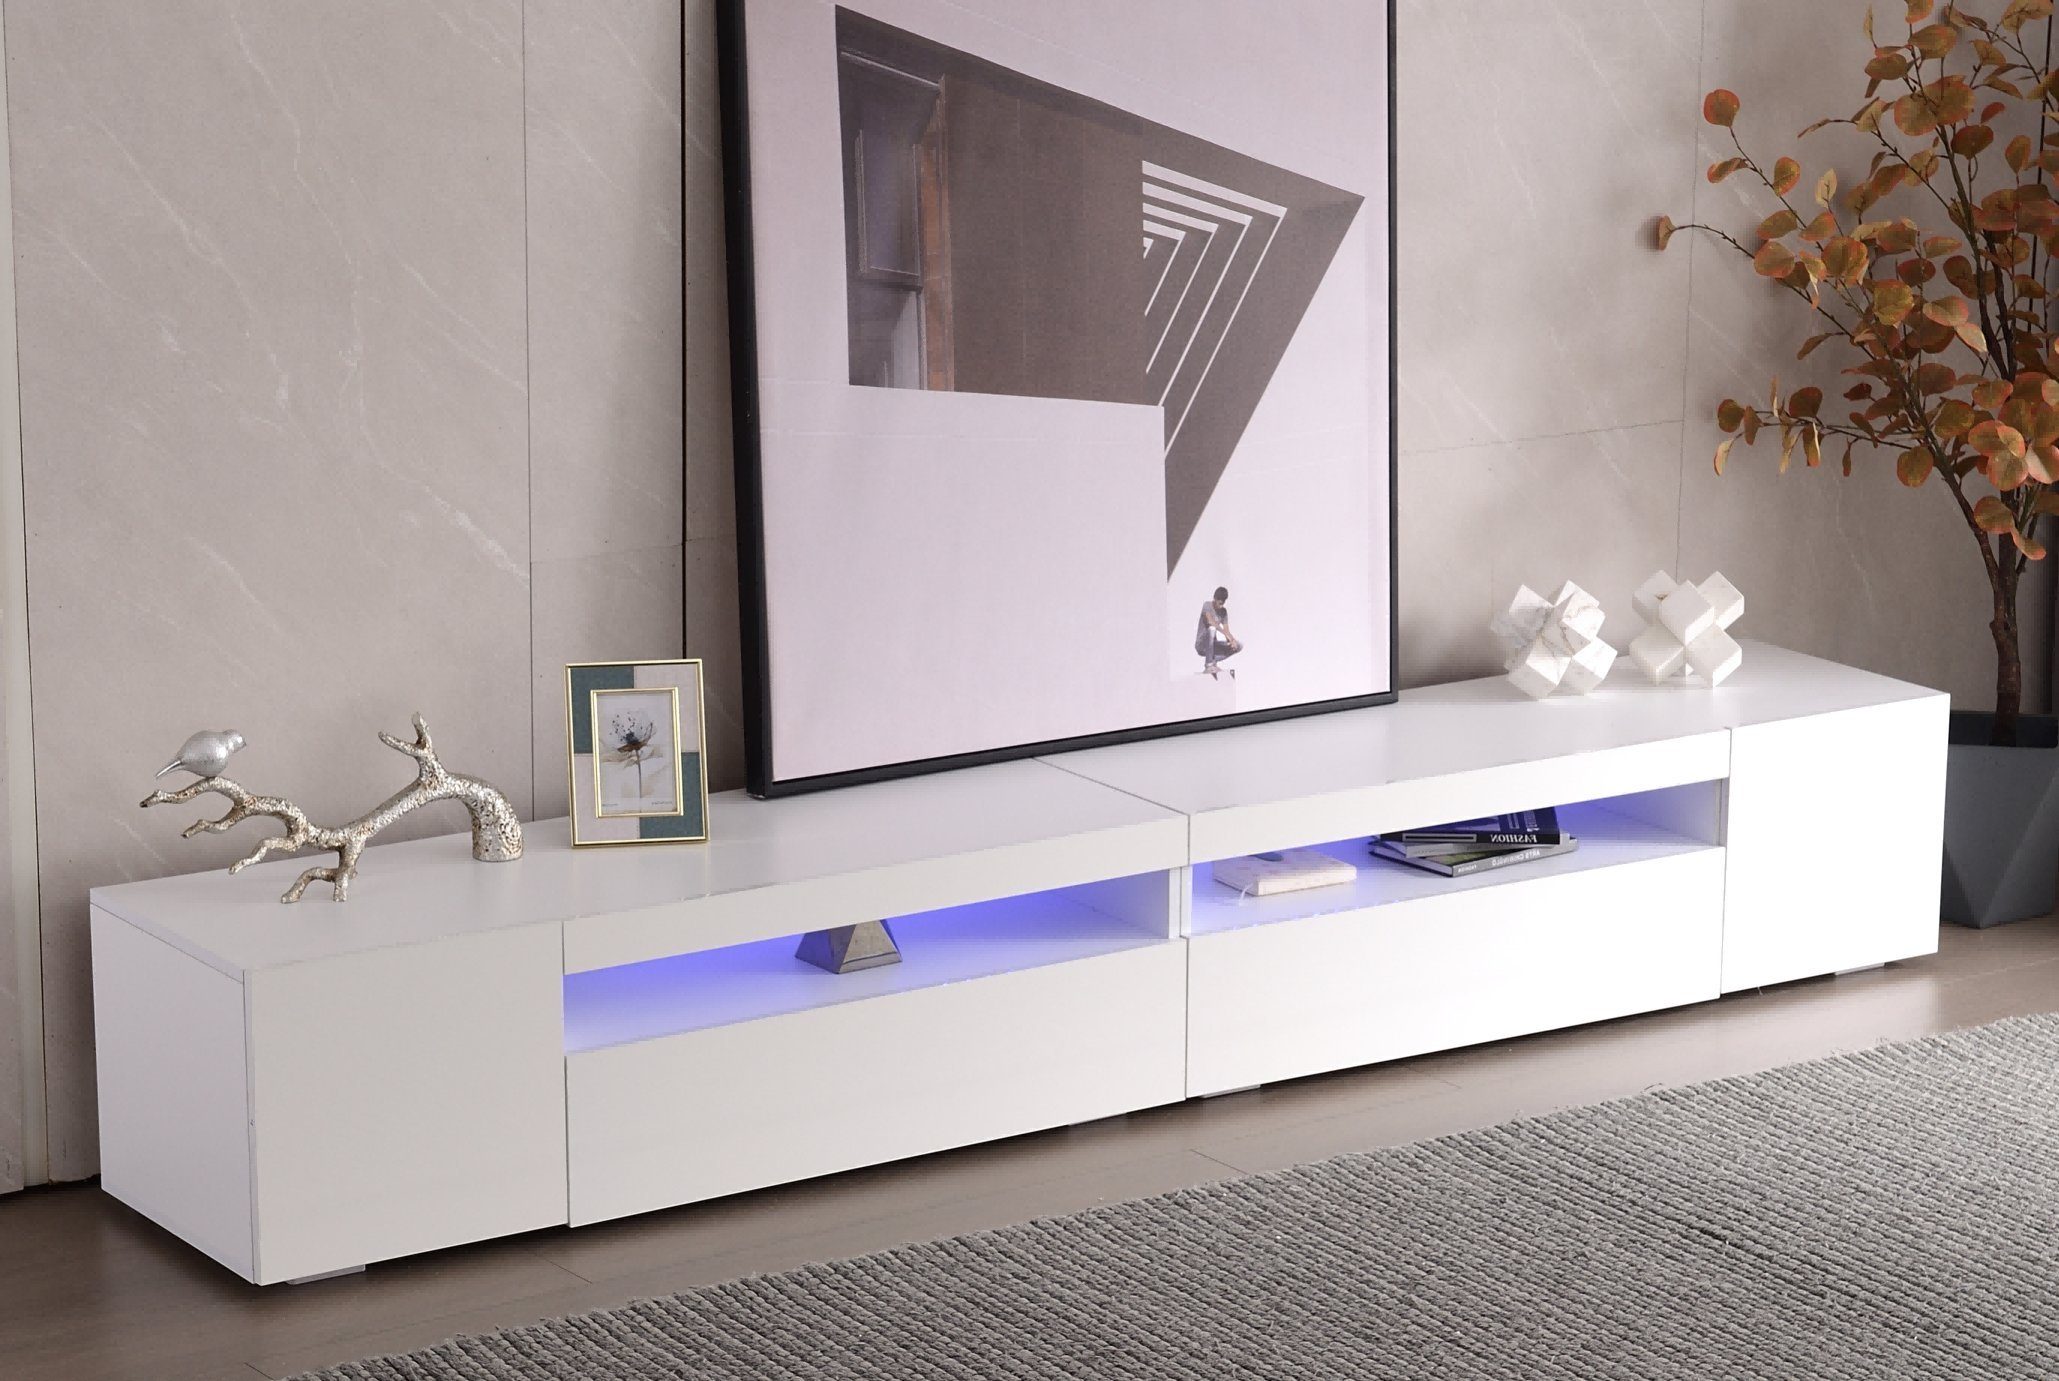 Merax Lowboard mit 16 Farben LED Beleuchtung, TV-Kommode, TV Schrank weiß  hochglanz, Fernsehtisch mit 2 Türen, 1 Klappe und 1 offenes Fach, B/H/T:240 /35/39cm